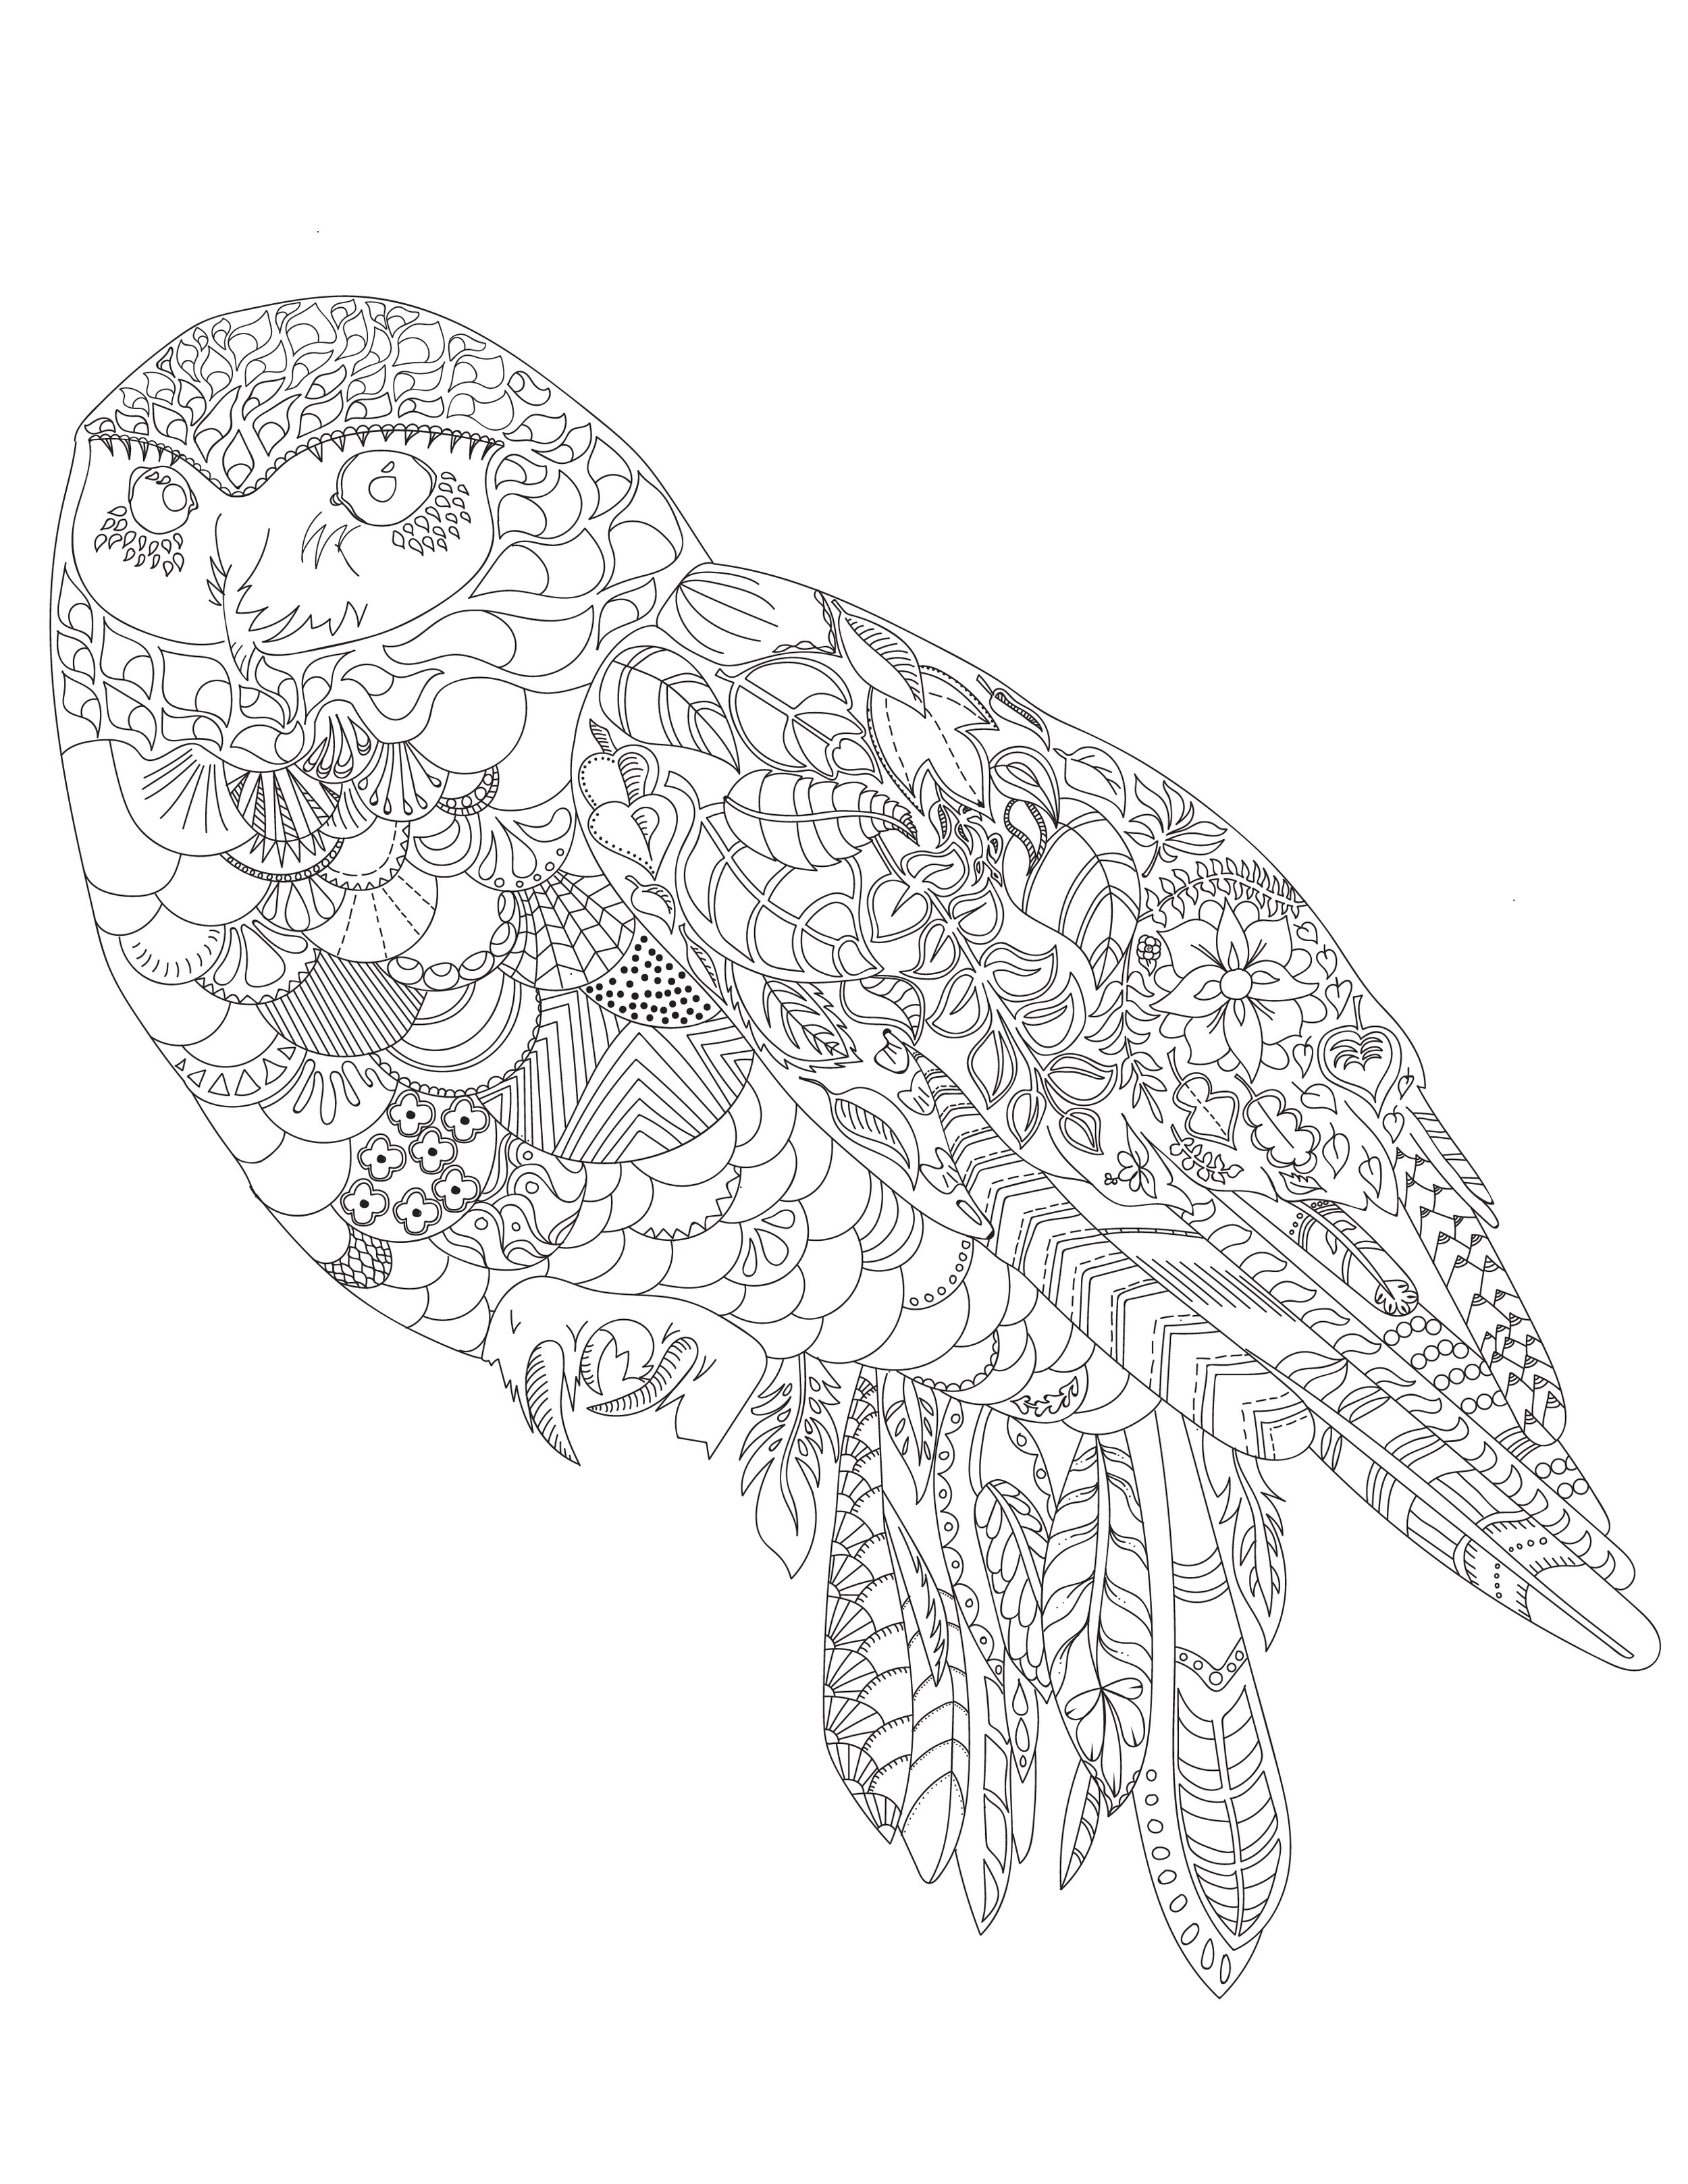 Colouring Sheet-Owl-04.jpg